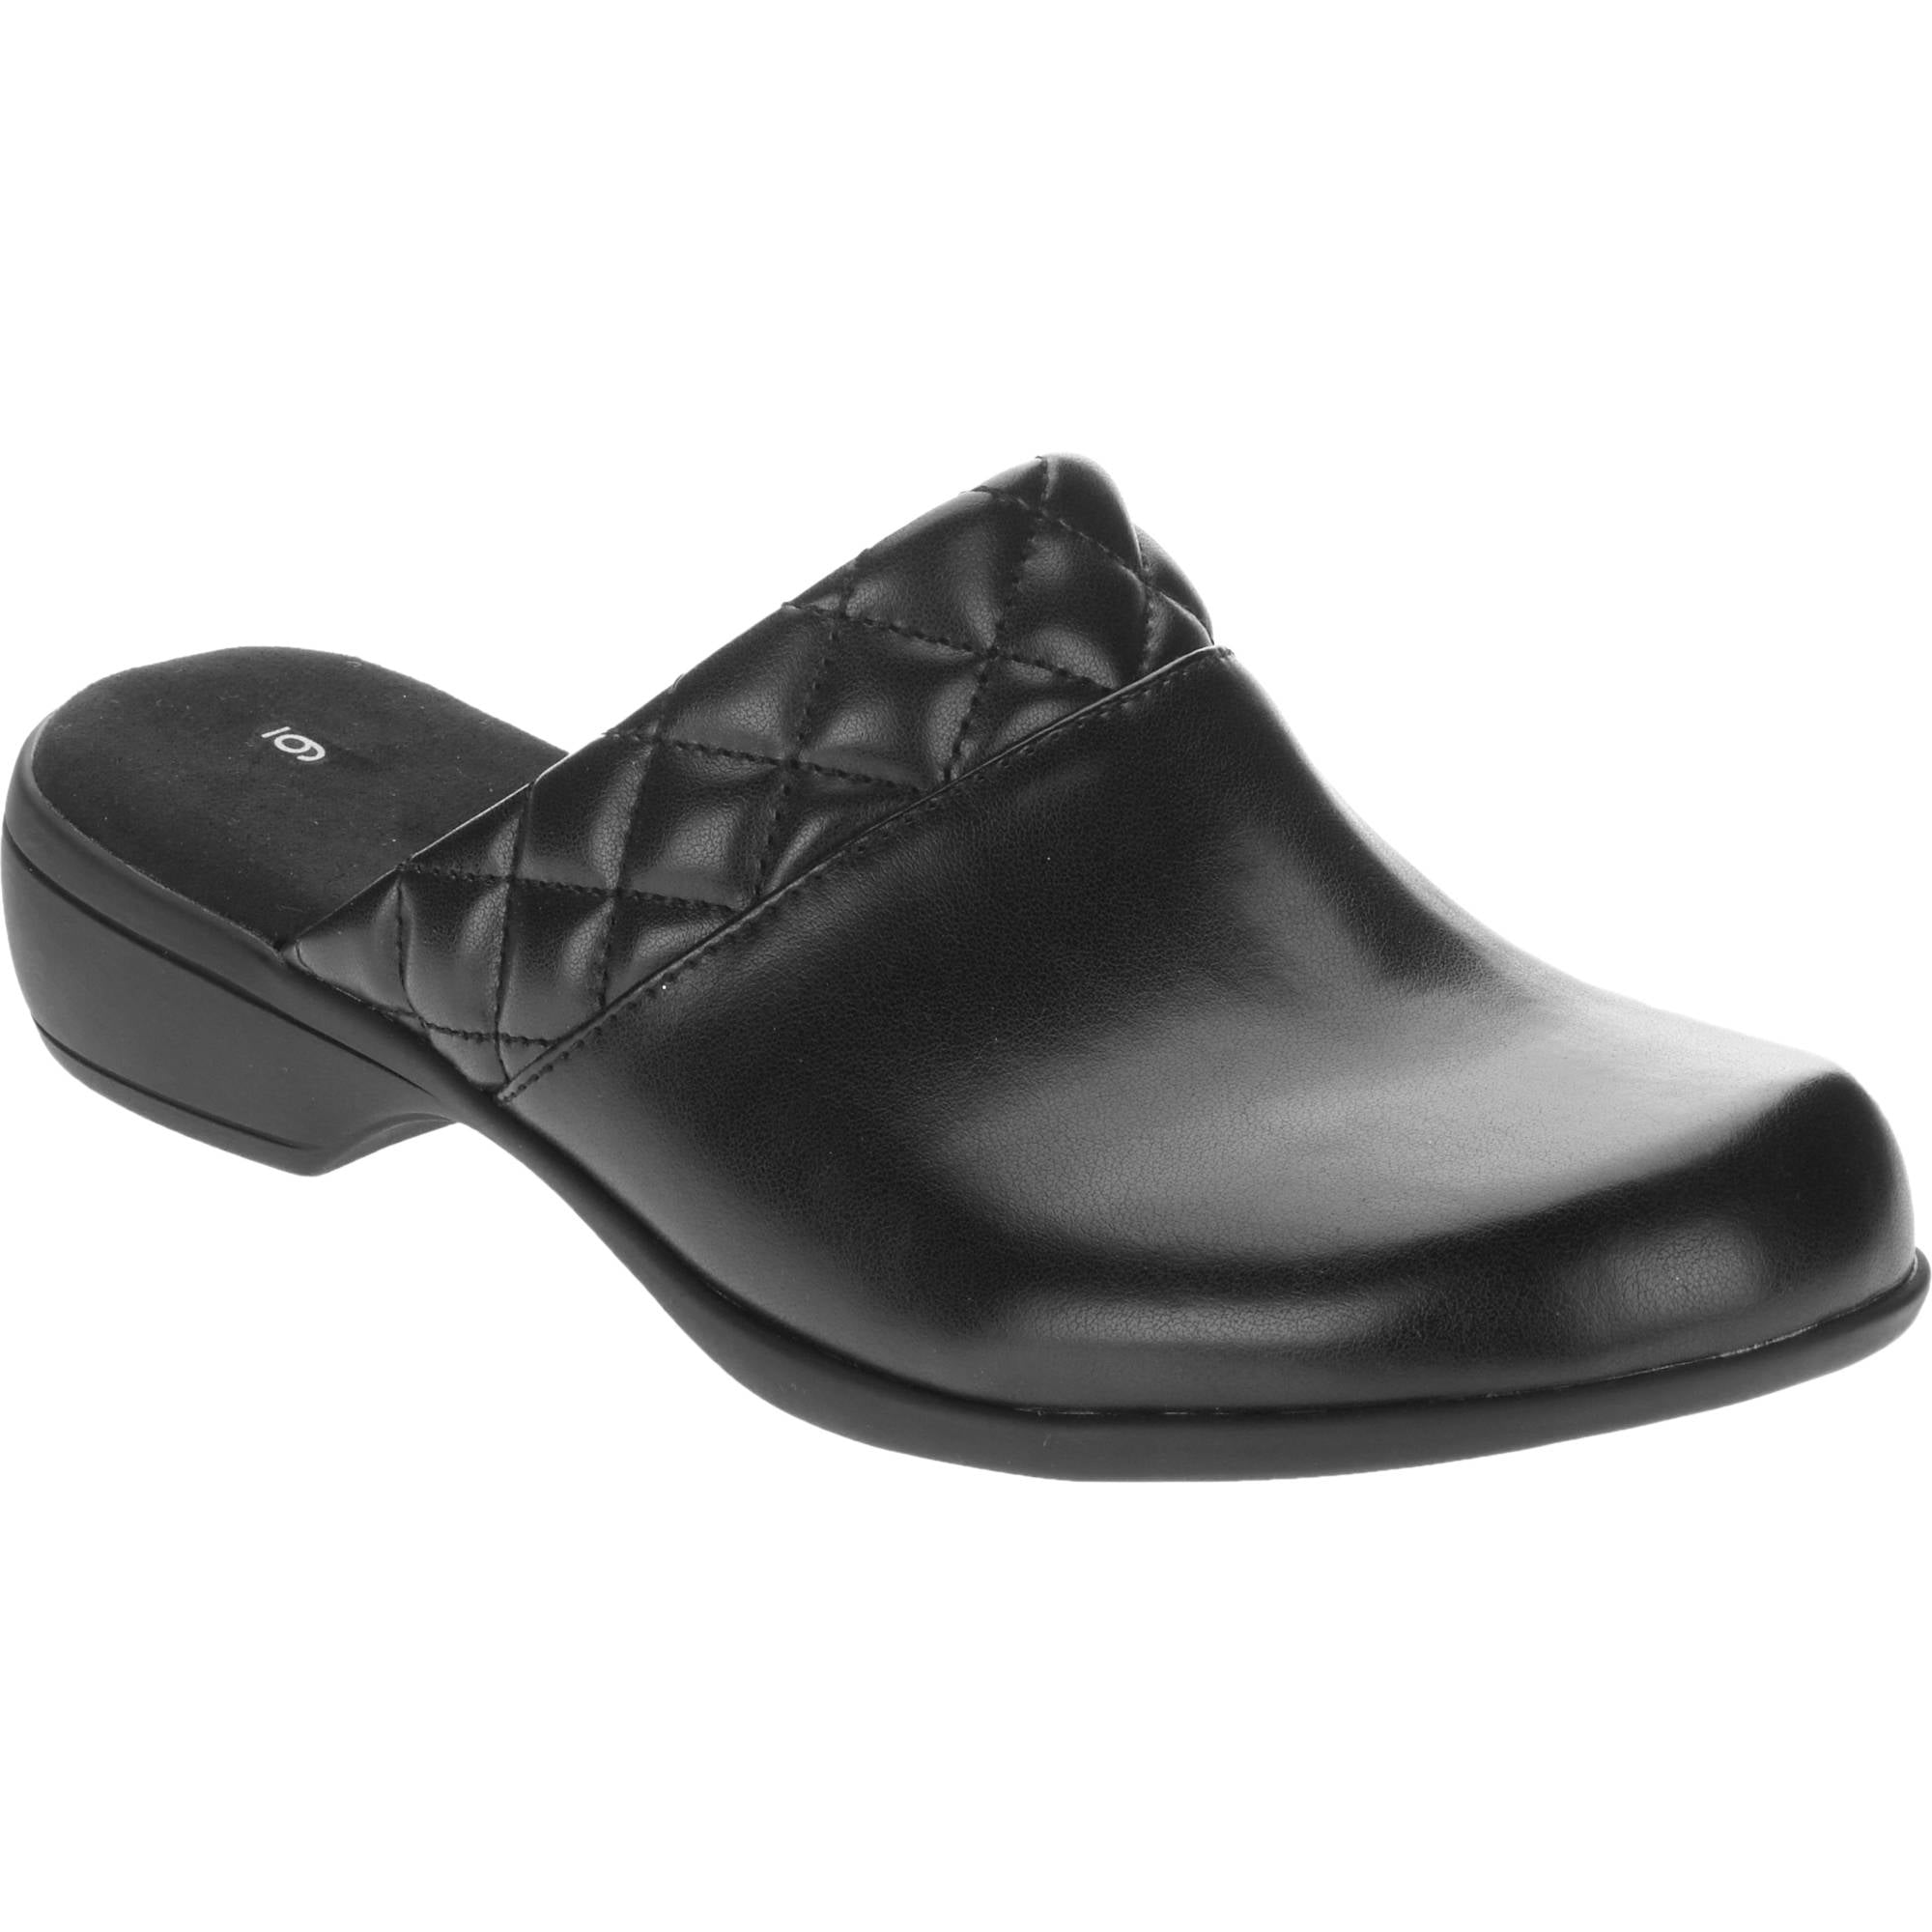 walmart women's comfort shoes